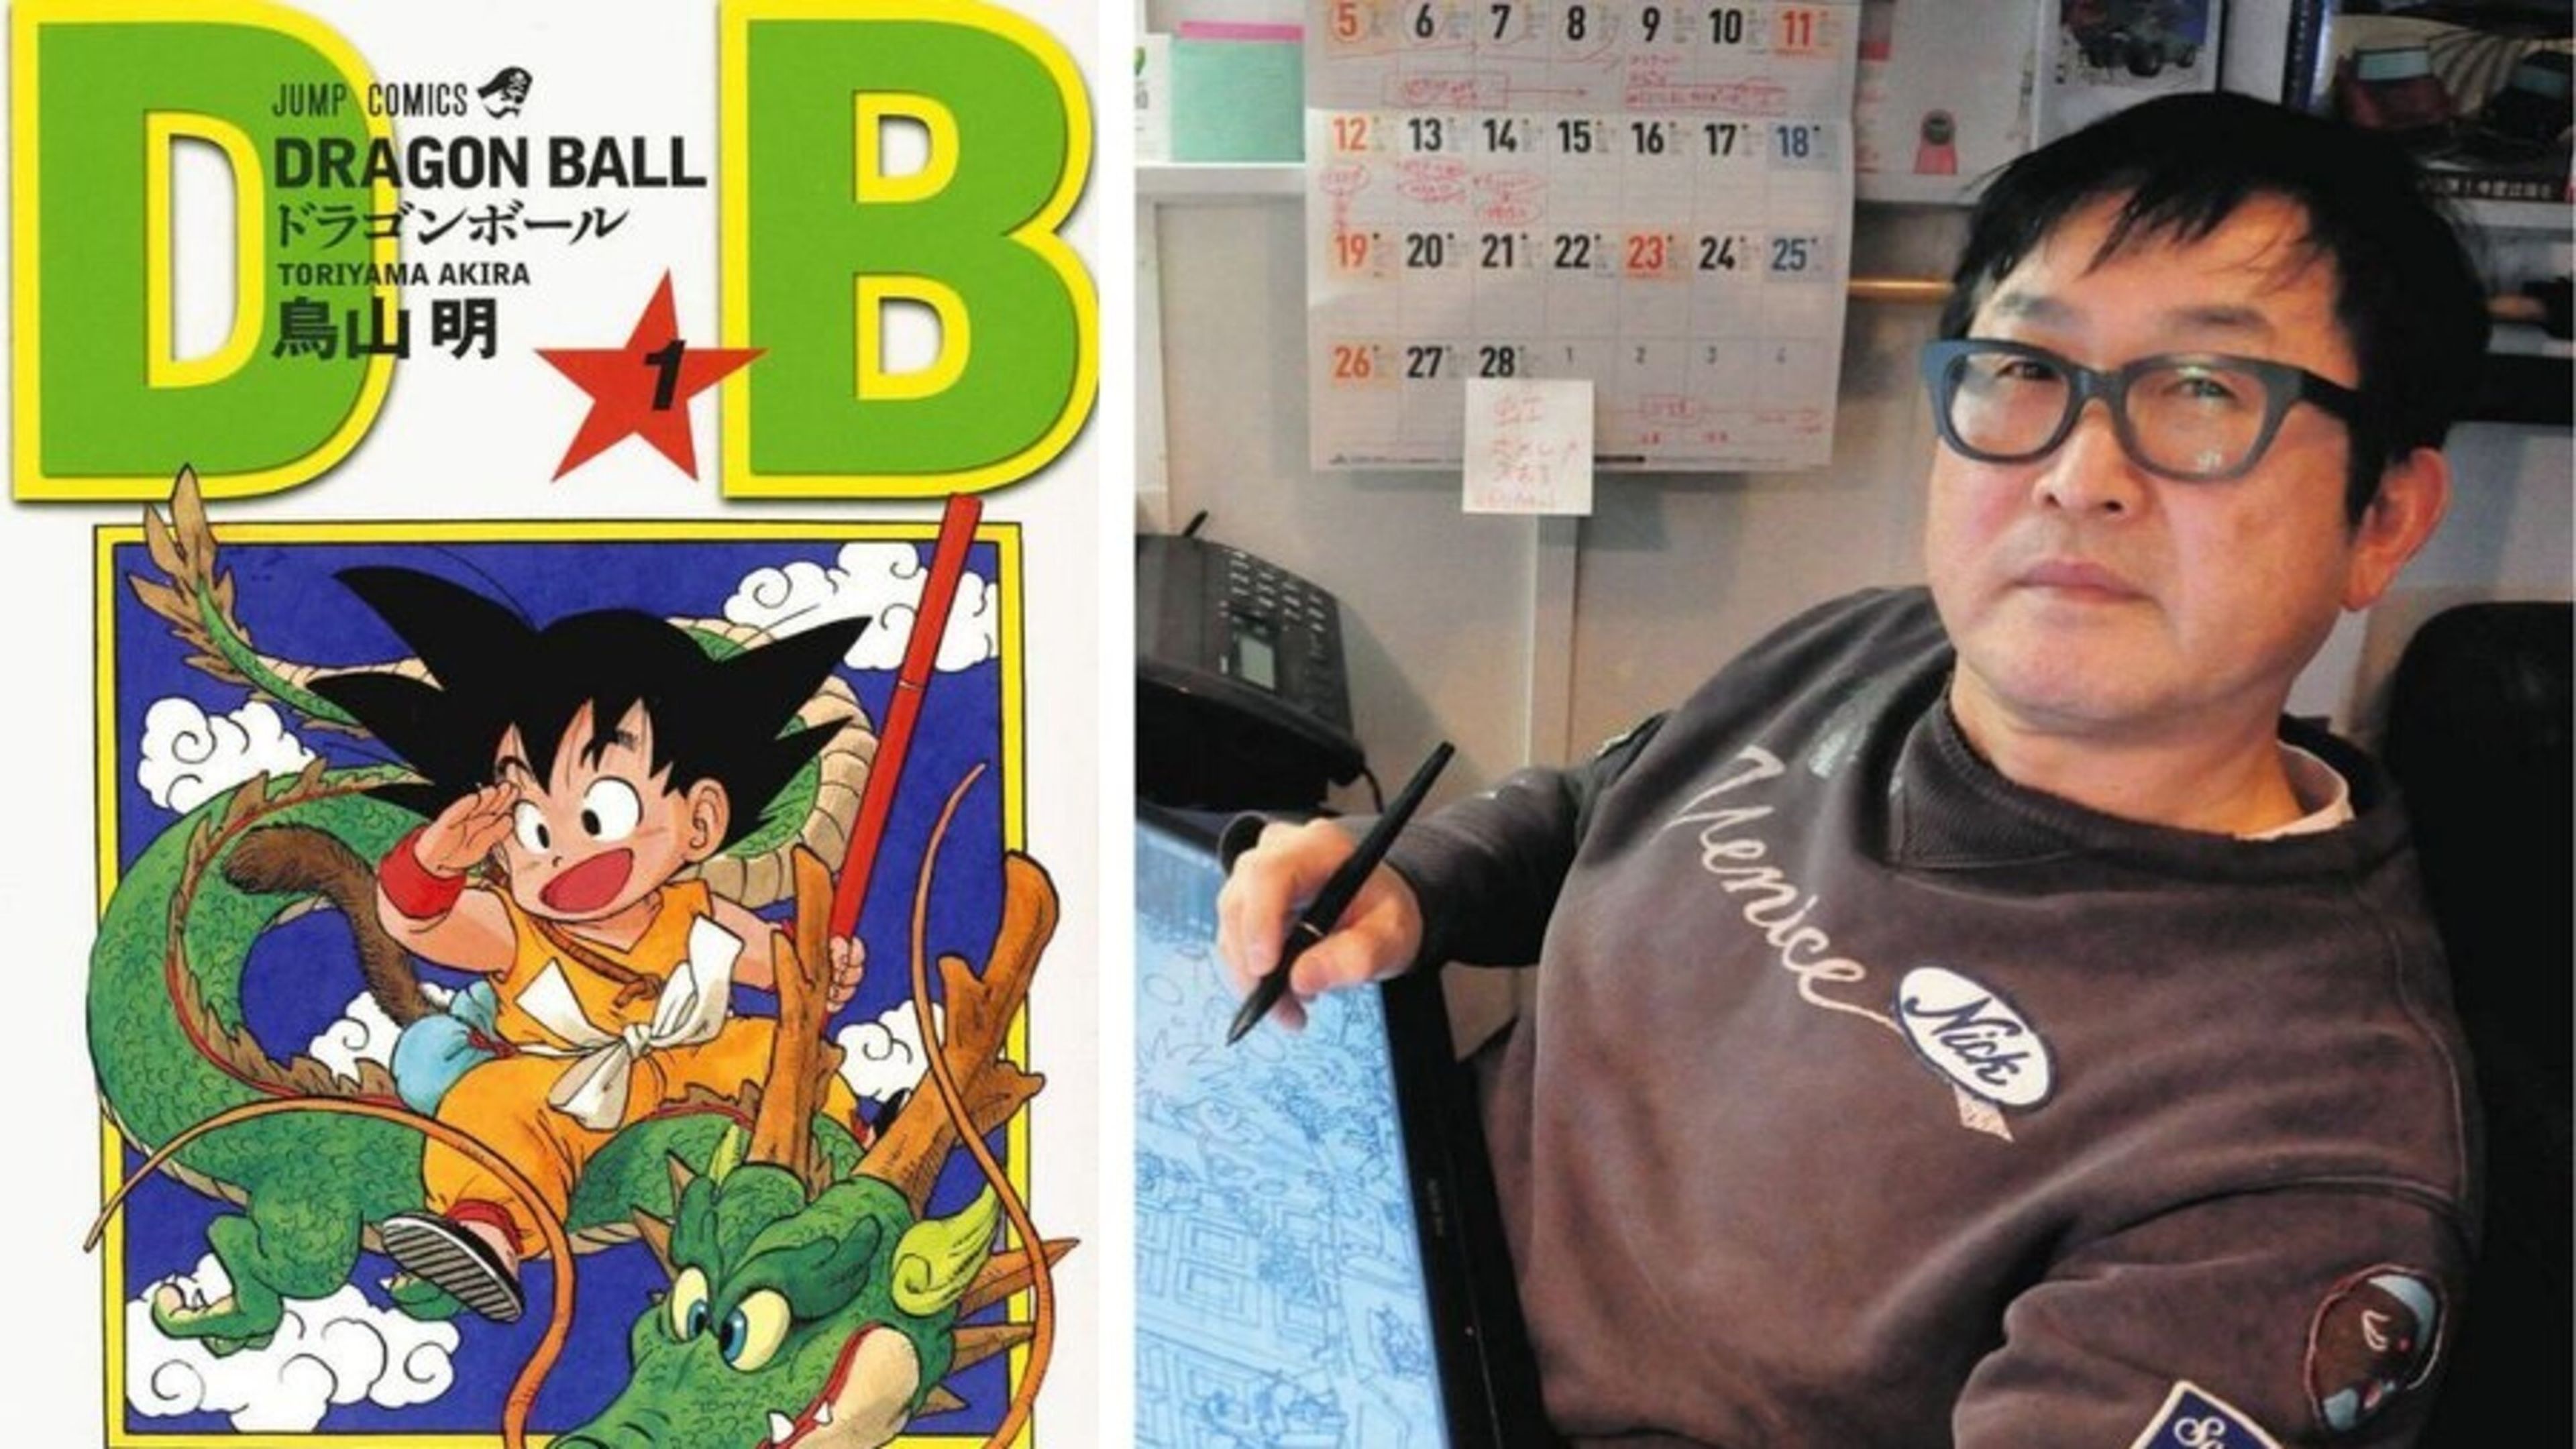 El asistente que ayudó a Akira Toriyama durante la época dorada de Dragon Ball habla de la muerte del mangaka